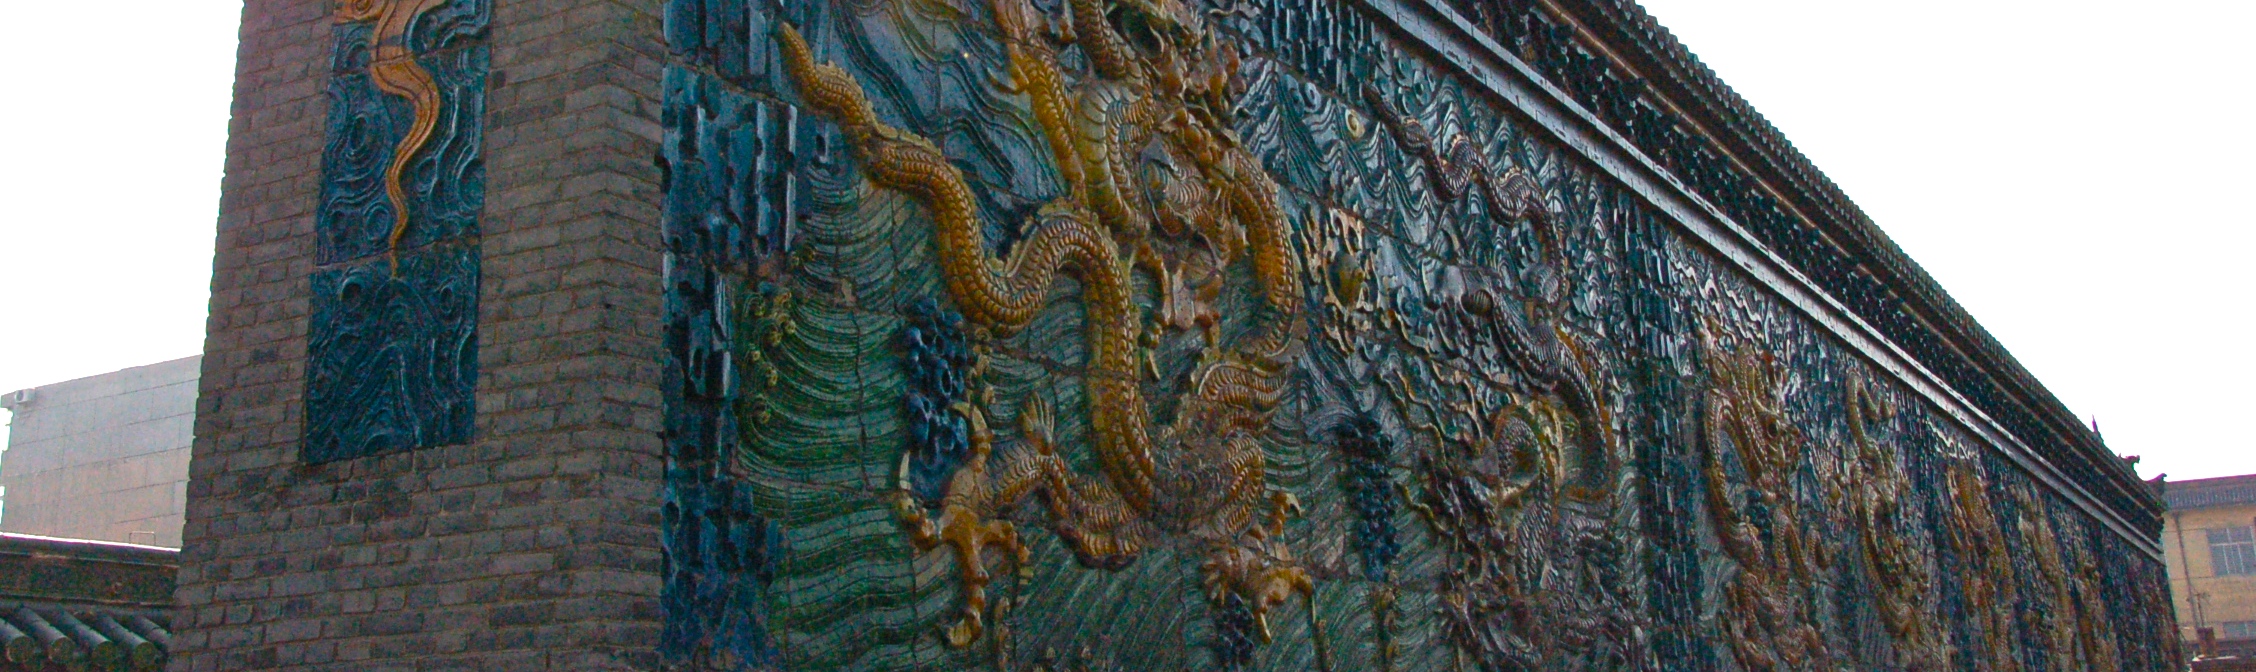 Nine-Dragon Wall, Datong